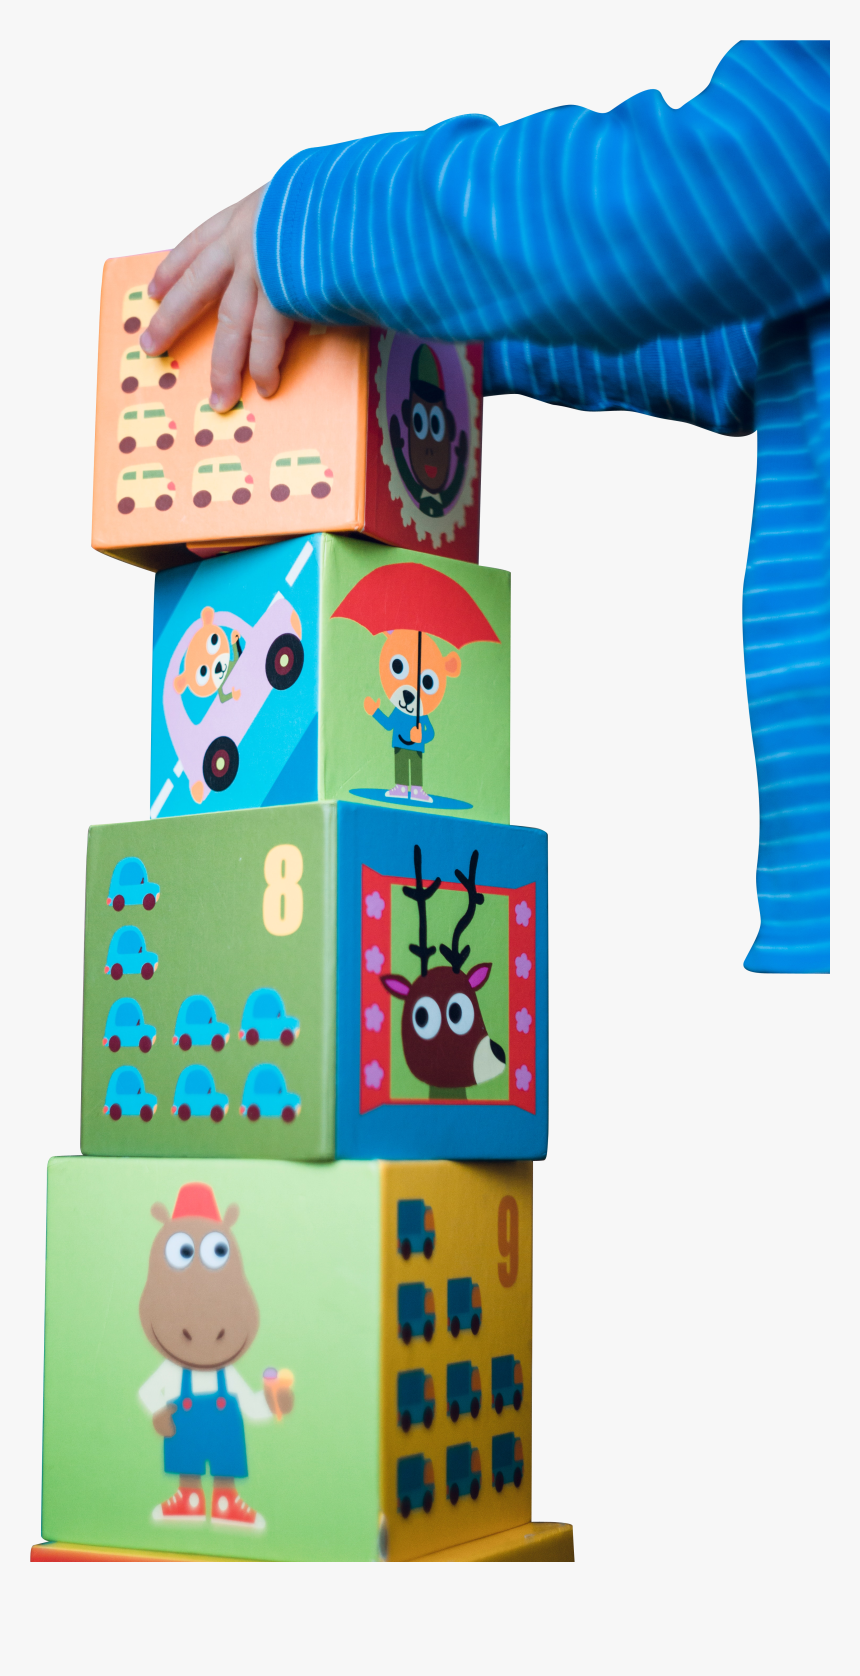 K#stacking Toy Blocks - Child, HD Png Download, Free Download